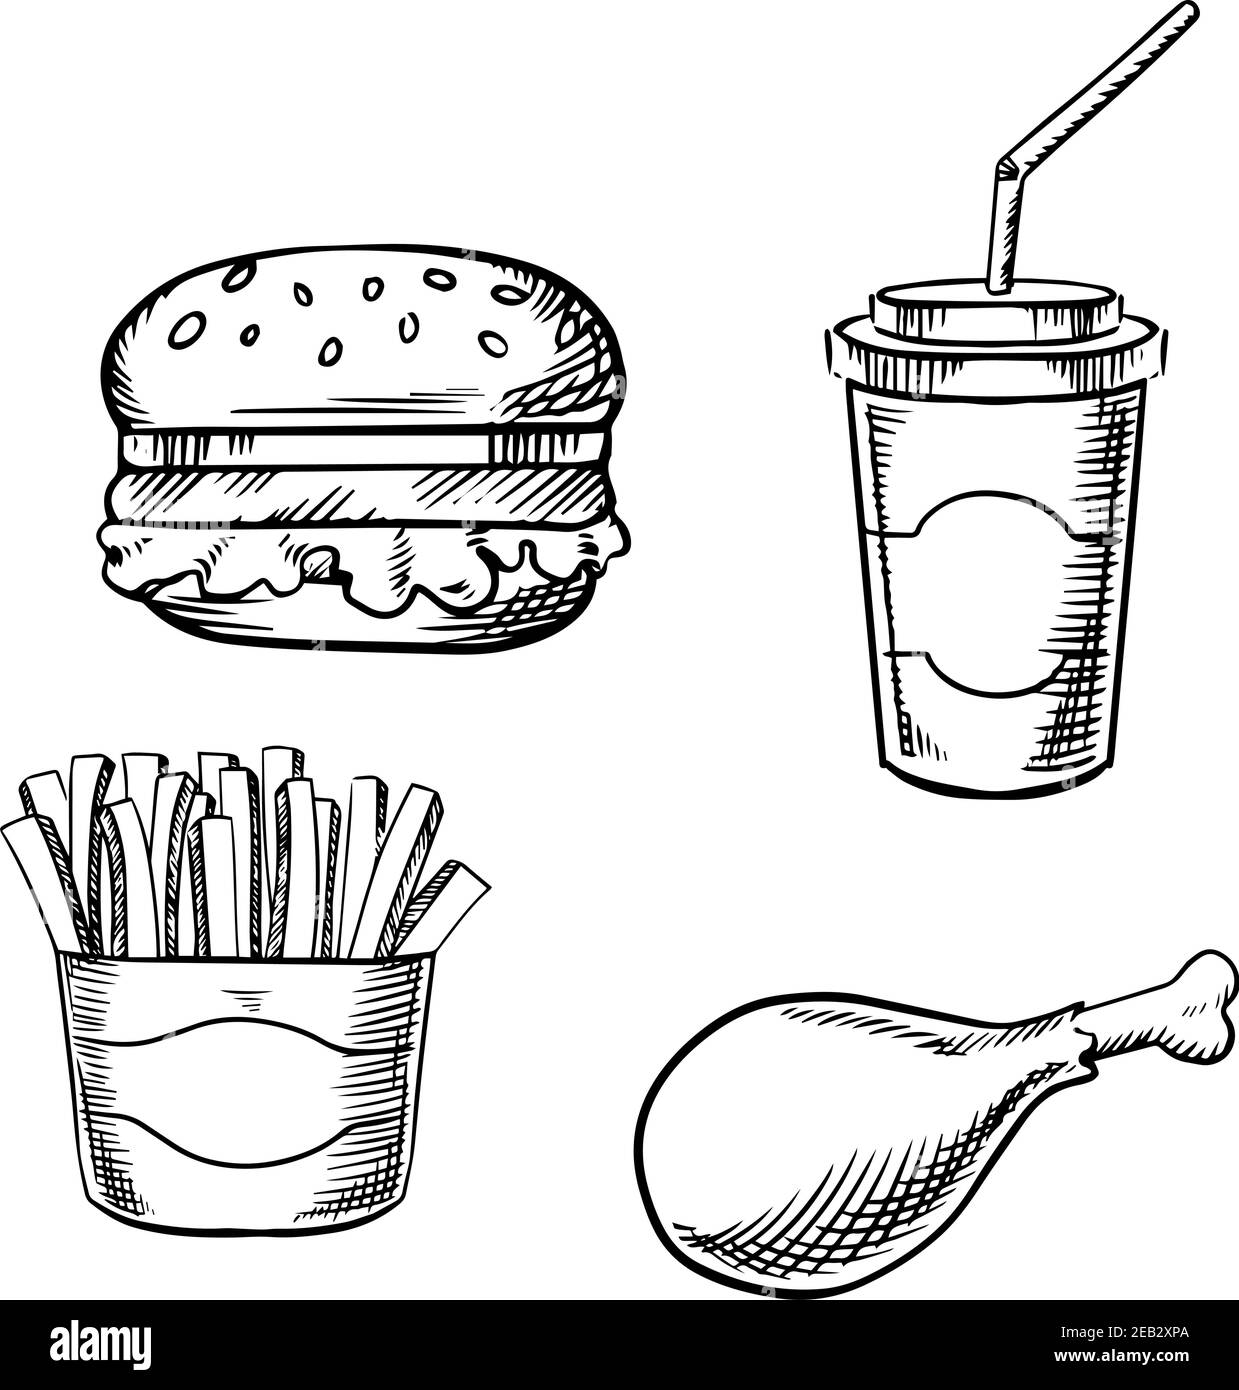 Hamburger de restauration rapide avec légumes frais, gobelet en papier soda avec paille, frites dans une boîte à emporter et cuisse de poulet frite. Images d'esquisse Illustration de Vecteur